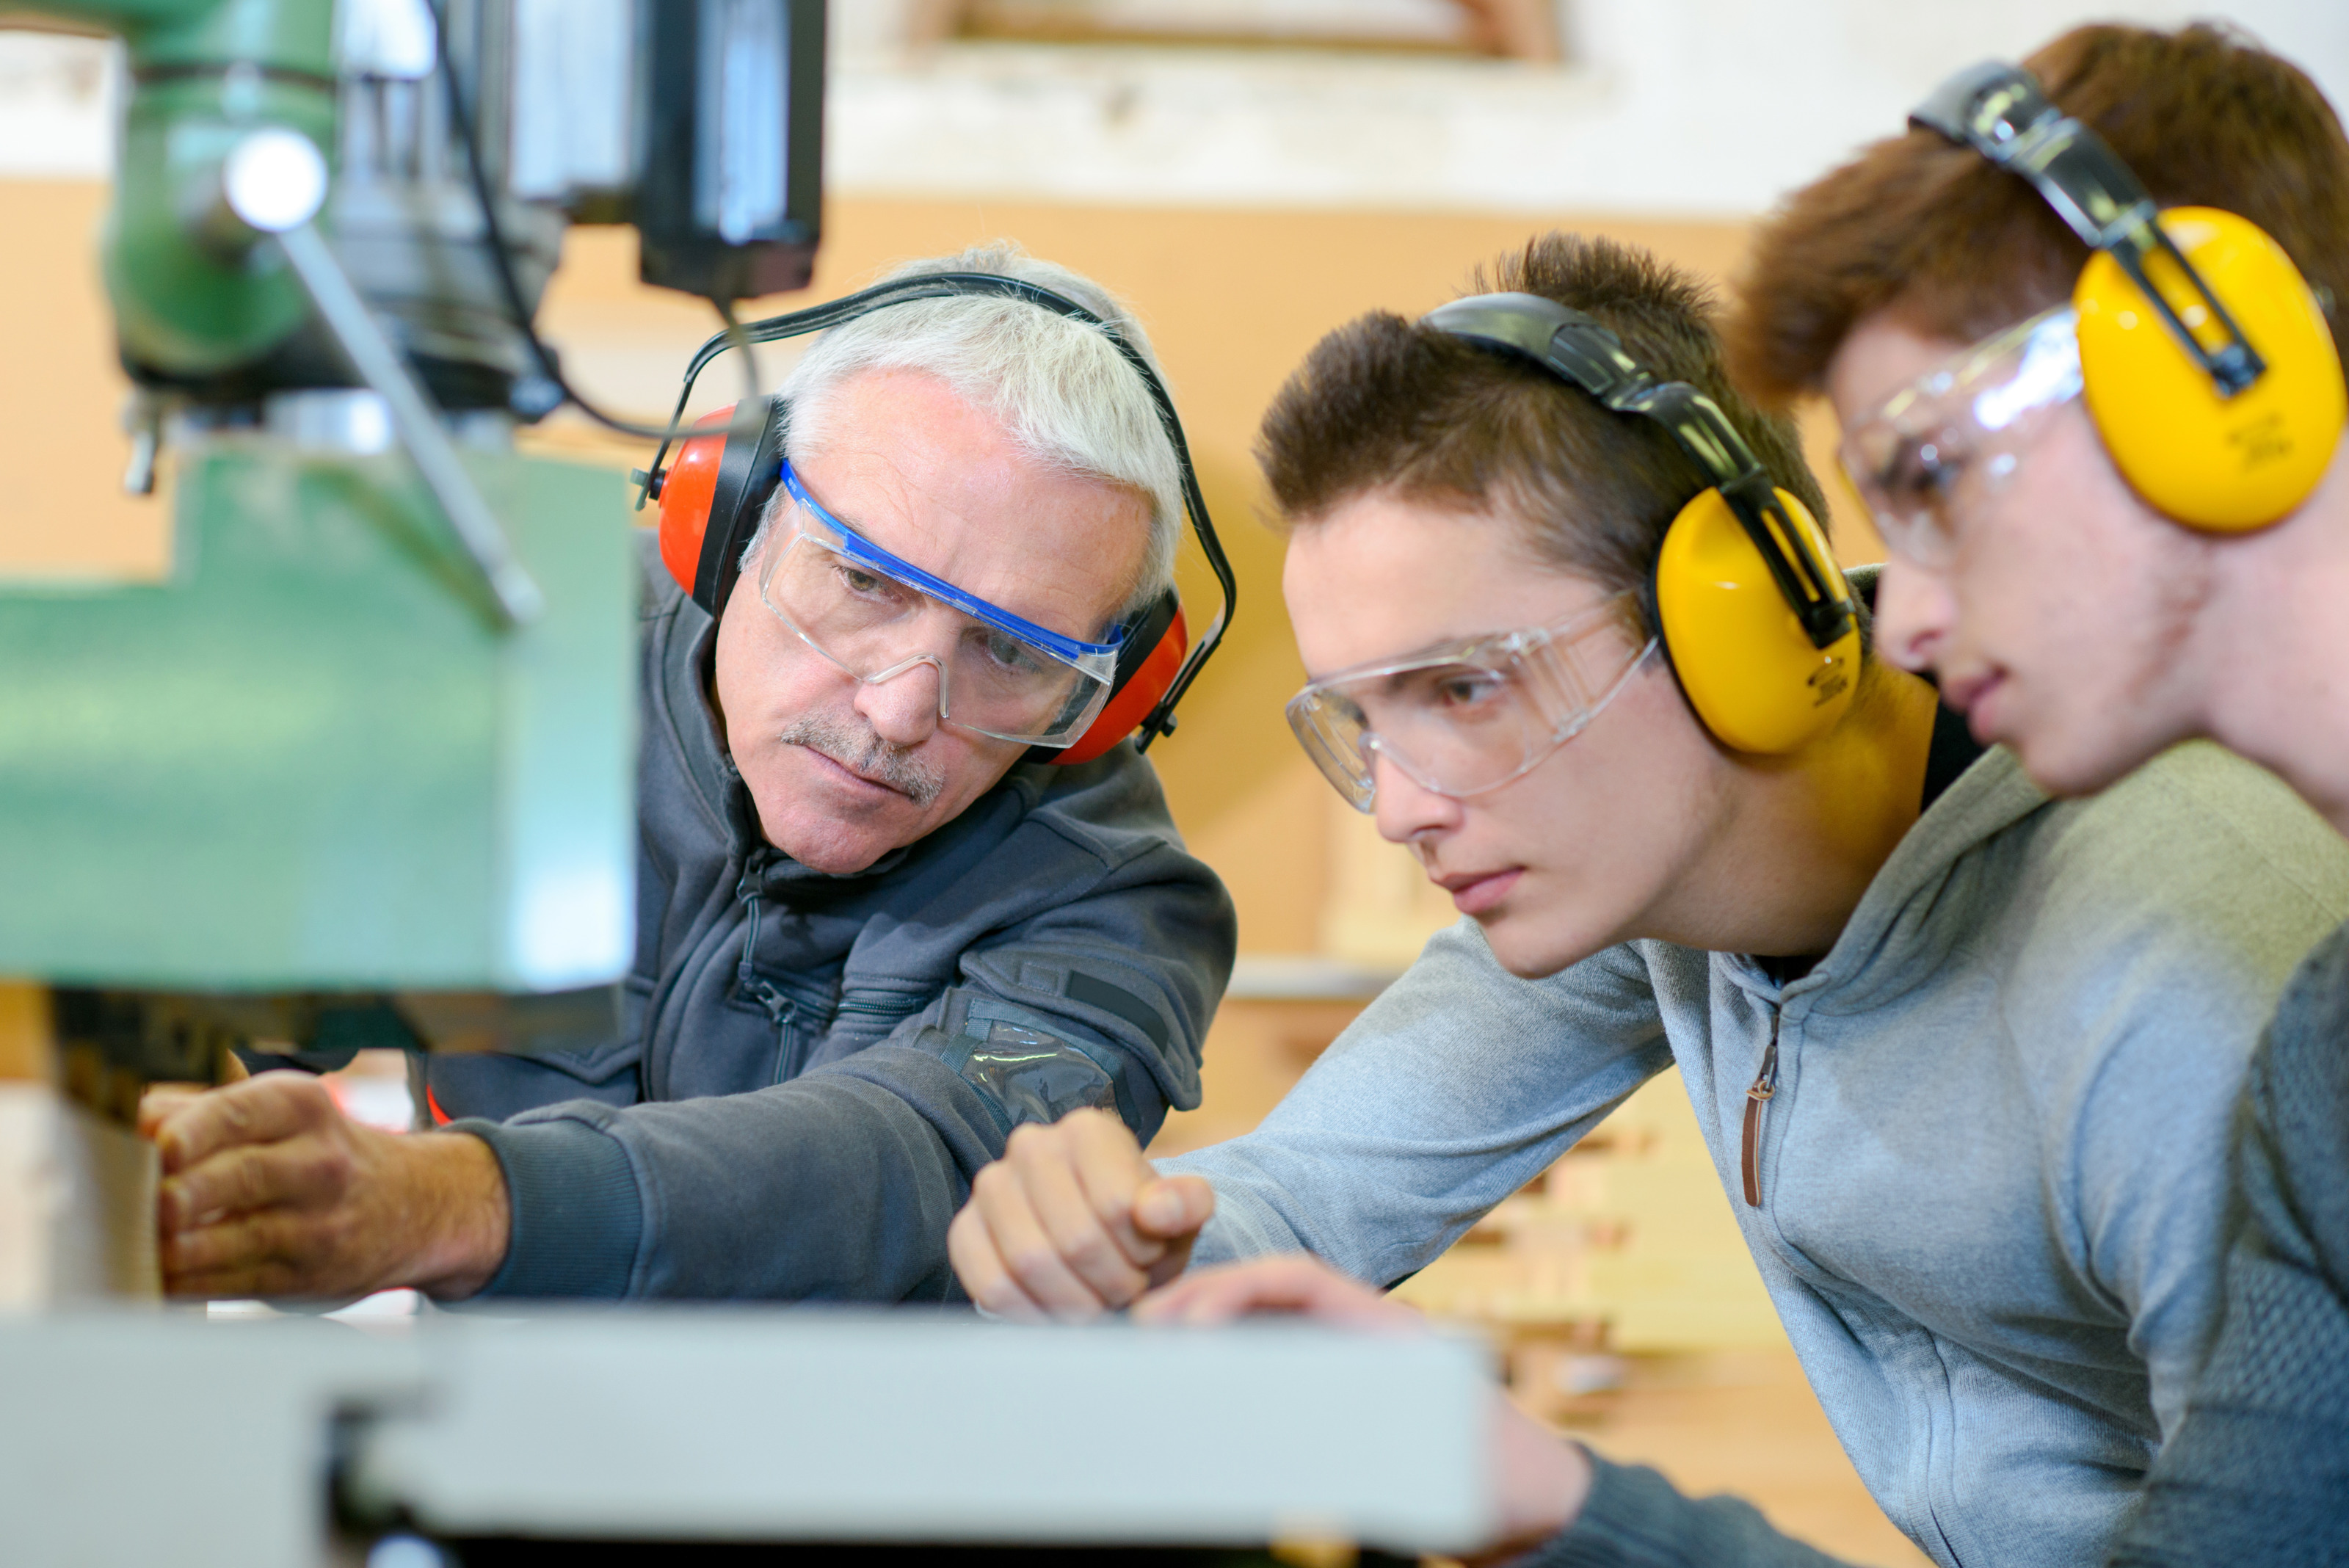 Drei Personen mit Schutzbrillen und Gehörschutz stehen an Werksmaschine, die eine der Personen bedient und blicken darauf